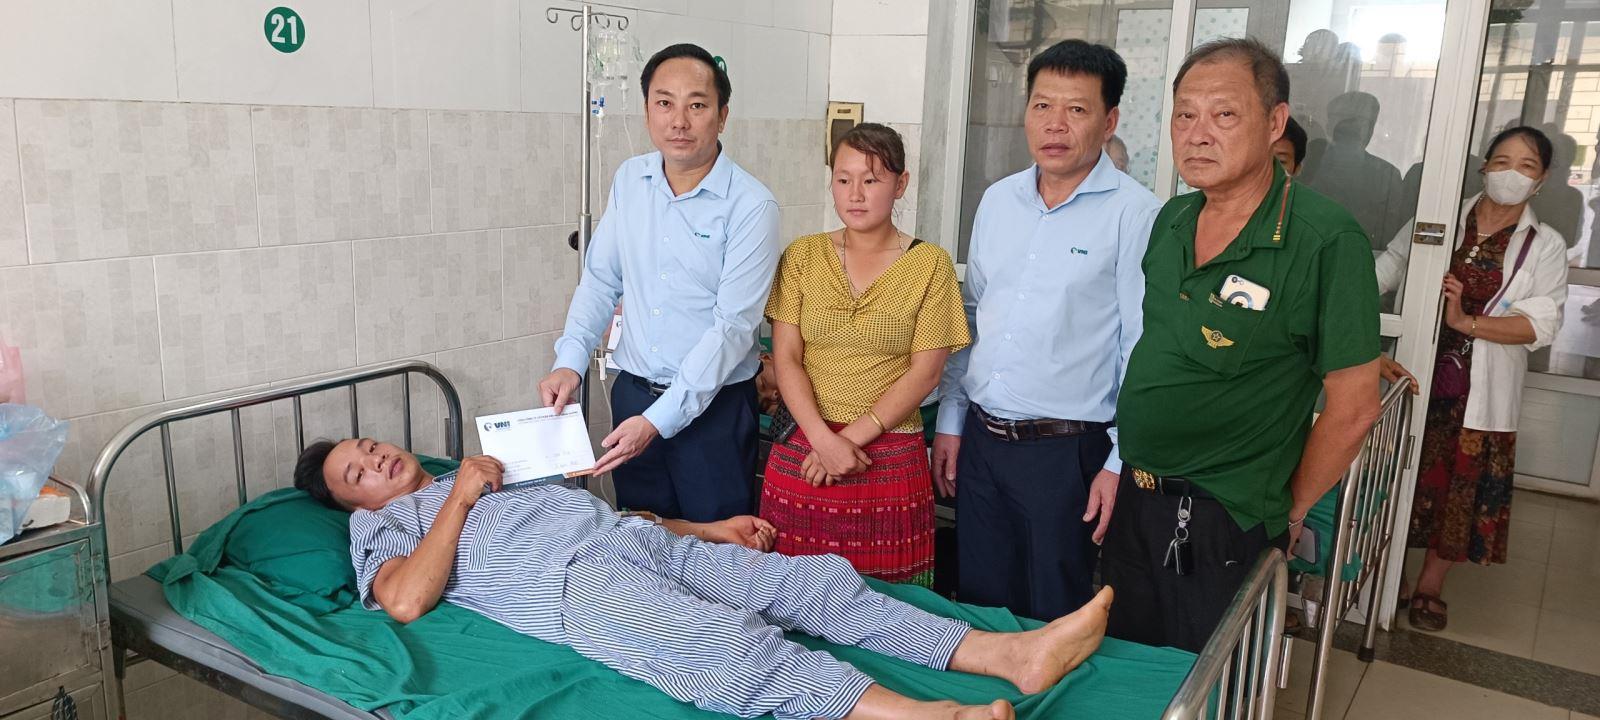 VNI tạm ứng lần 1 số tiền 230 triệu đồng bảo hiểm cho gia đình các nạn nhân xe khách bị sạt lở đất tại Hà Giang